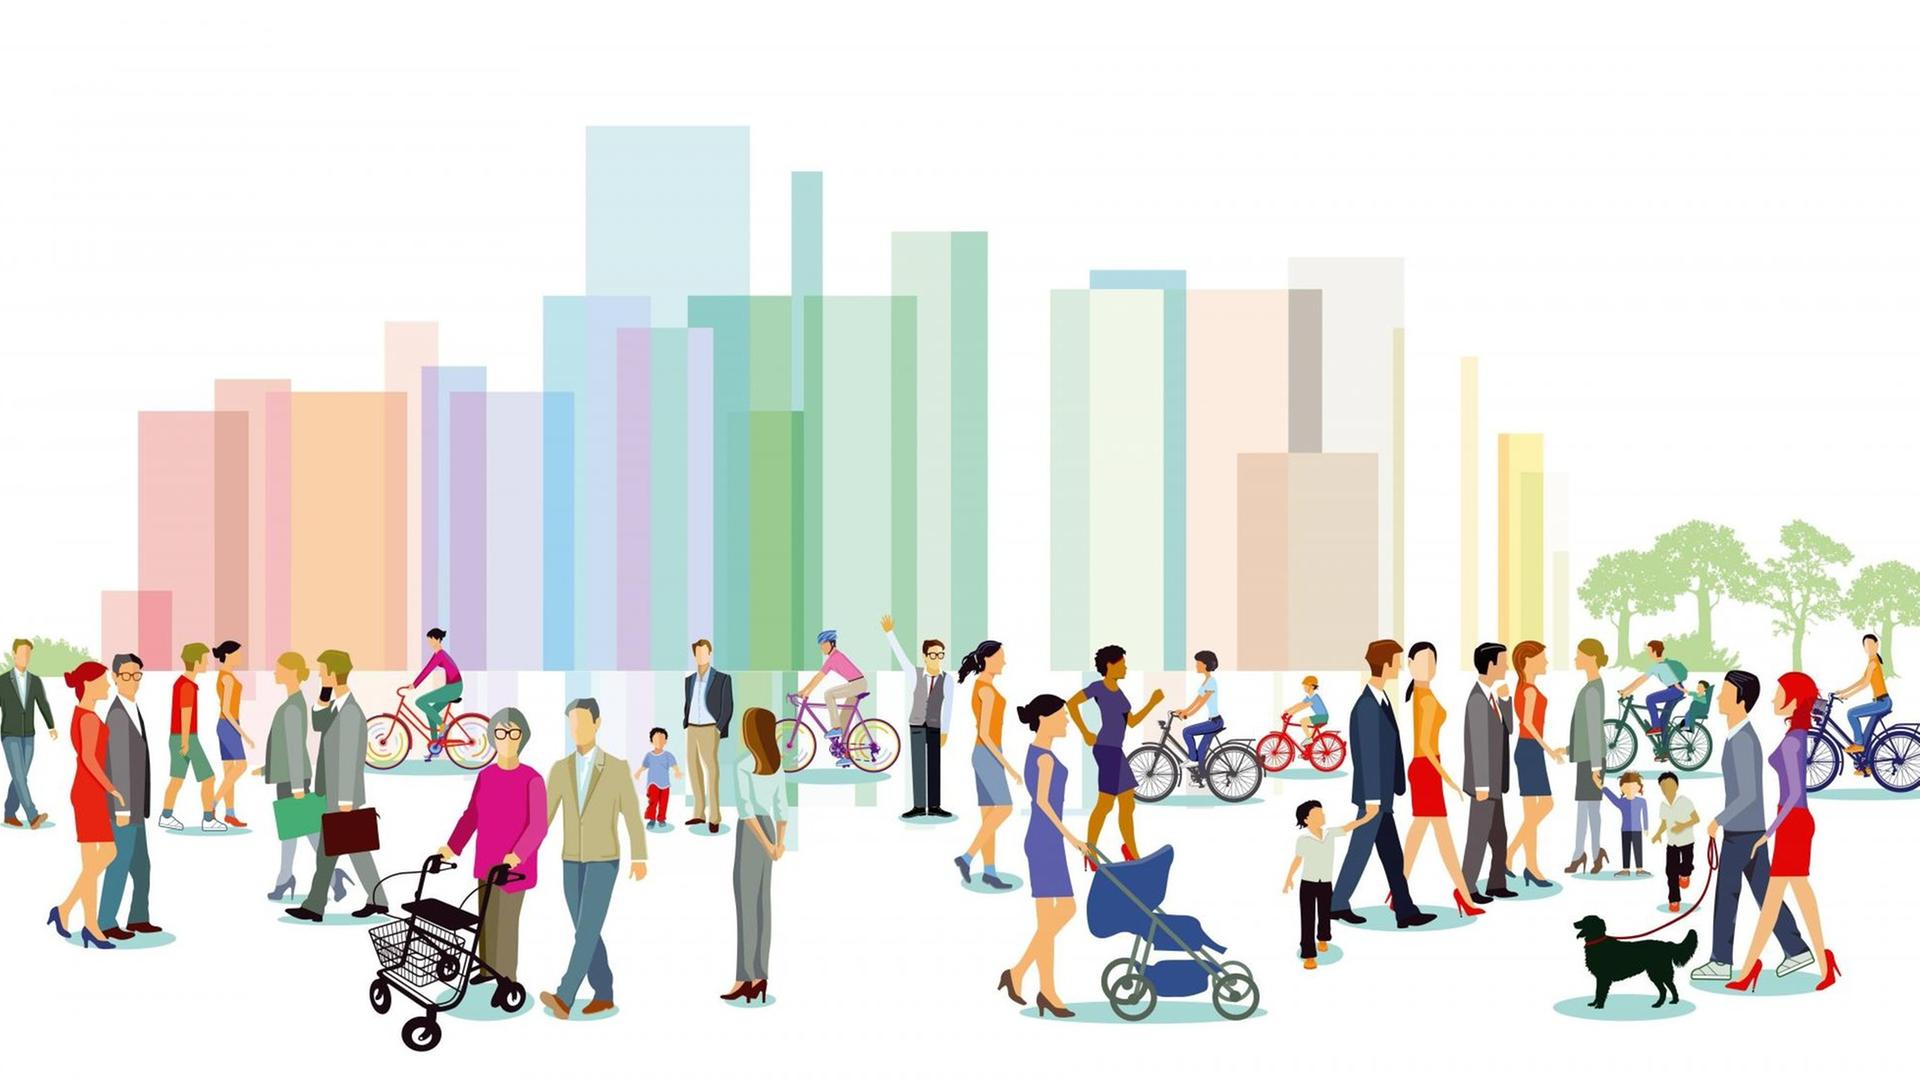 Eine Illustration zeigt viele verschiedene Menschen, stellvertretend für die unterschiedlichsten Identitäten im urbanen Raum.